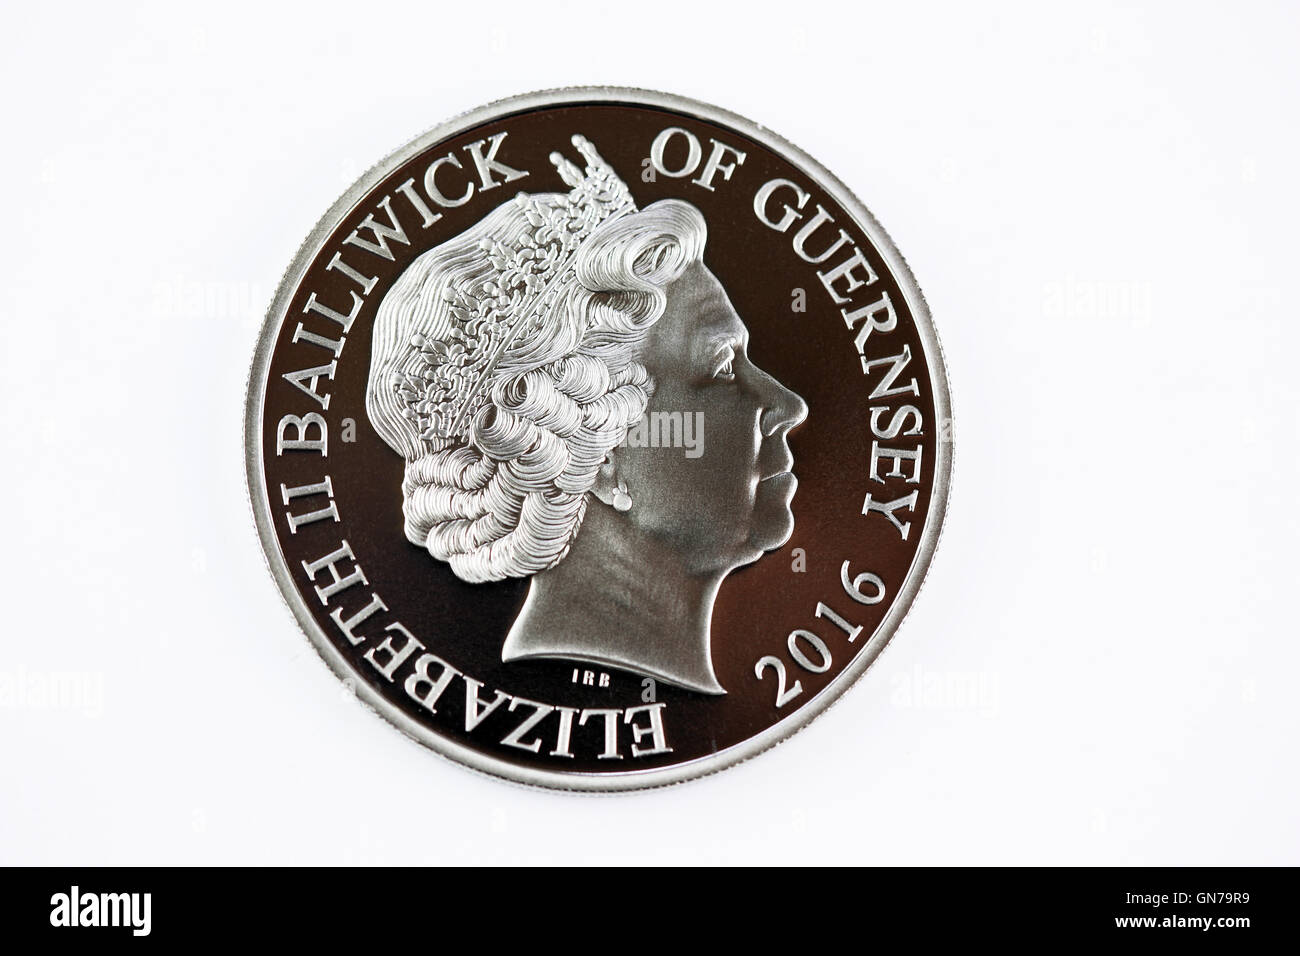 Reverso de una moneda de 10 peniques de 2016, parte de la Bailía de Guernsey series de monedas Foto de stock